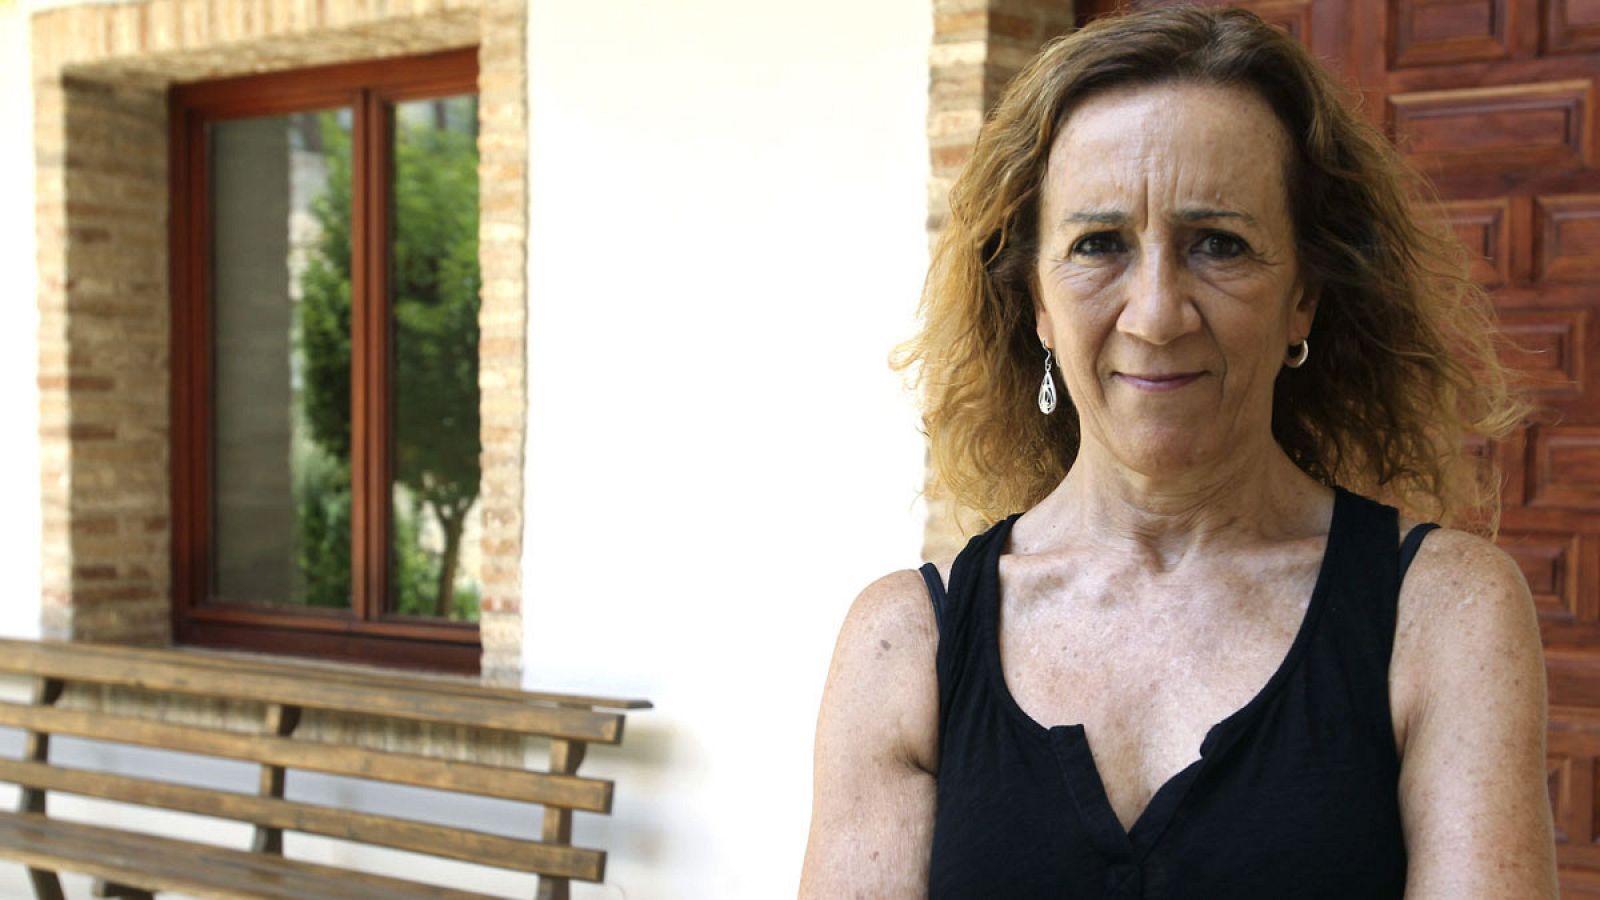 La directora catalana Carme Portaceli en una imagen de 2014 en la que posa durante una presentación en el Festival de Teatro Clásico de Almagro.